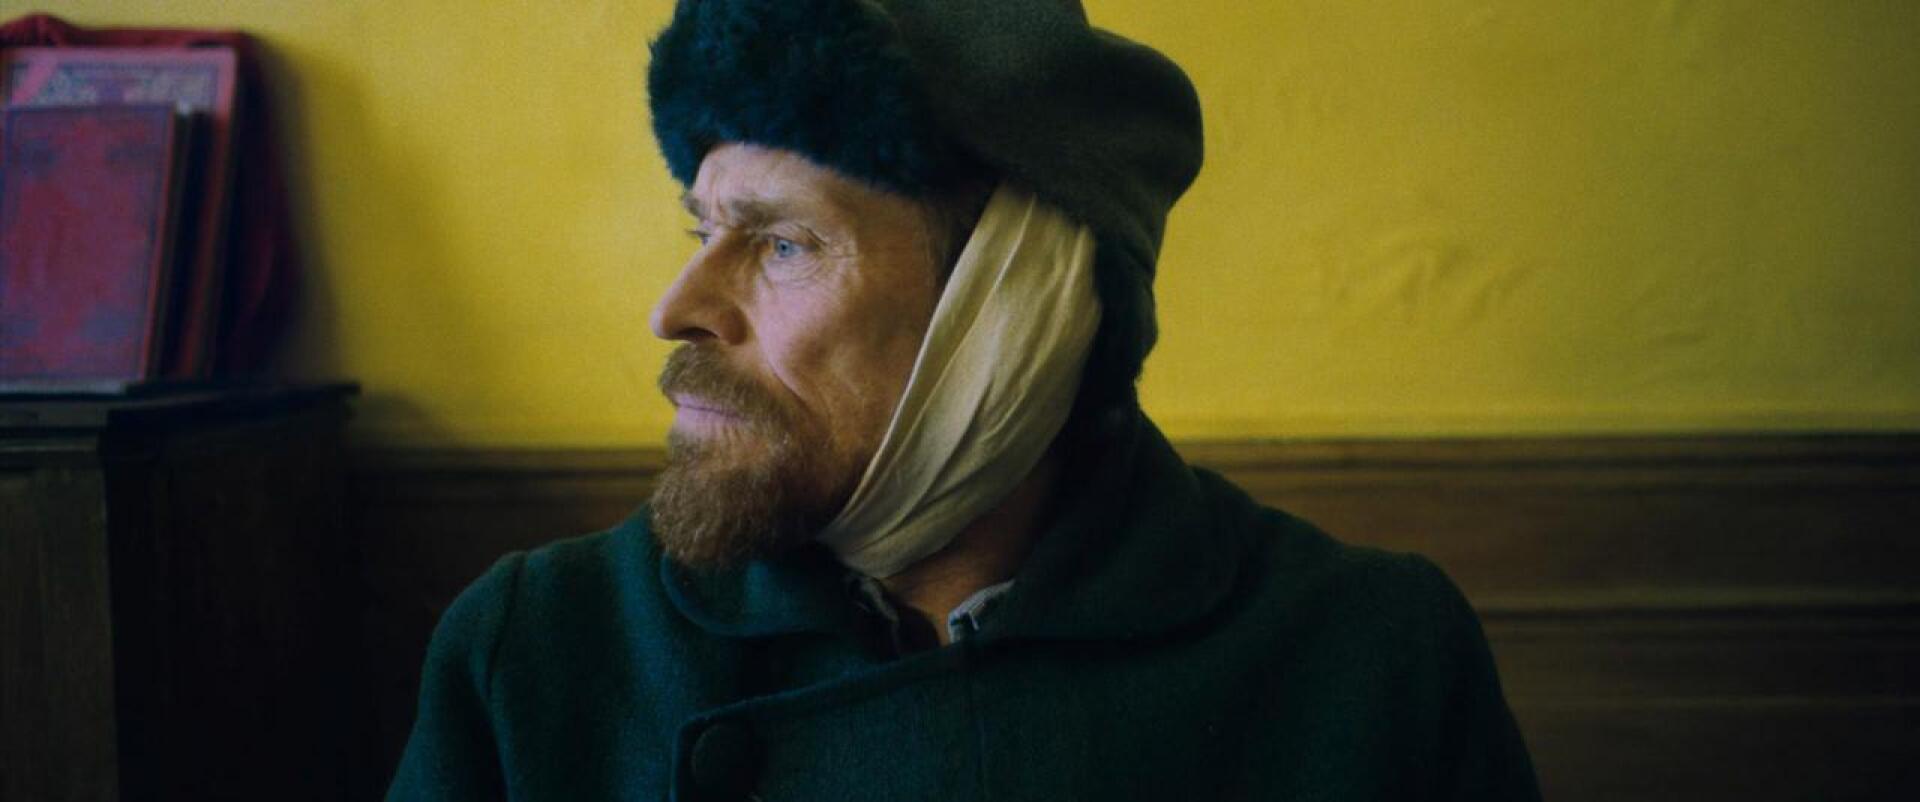 Kuvataiteilija Julian Schnabelin suuresta kollegastaan tekemä elämäkerta todistaa, että Van Gogh (Oscar-ehdokas Willem Dafoe) oli muutakin kuin leikattu korva.